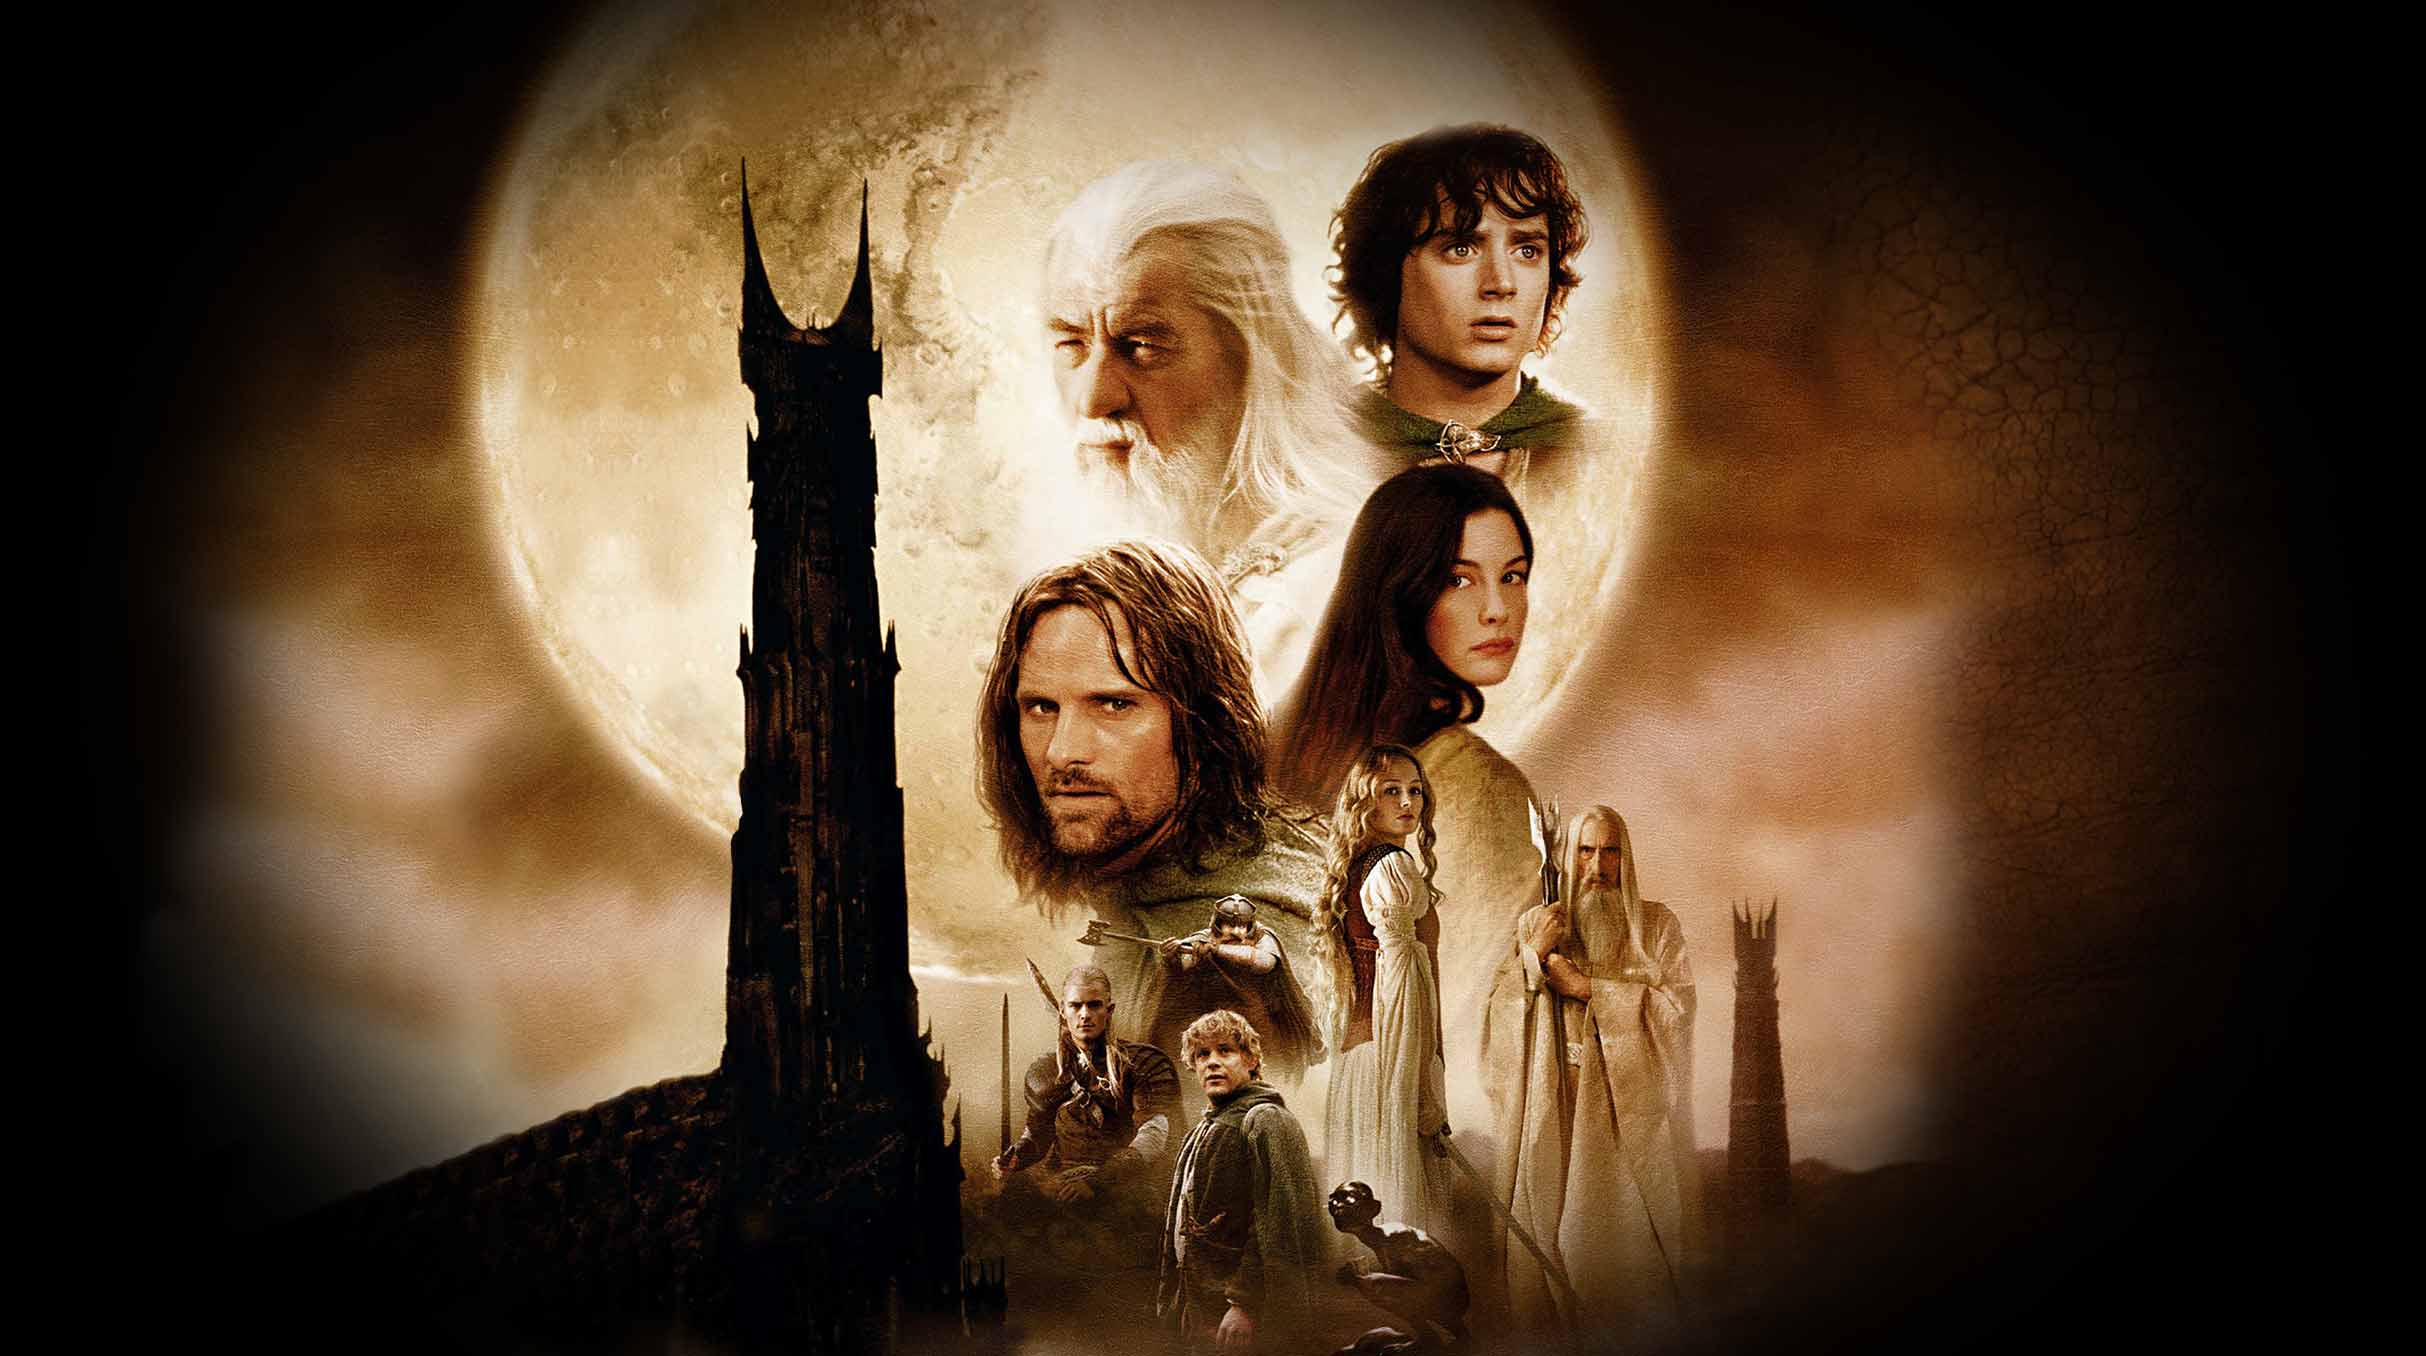 Lord of the Rings: The Two Towers- Praha -O2 universum Praha 9 Českomoravská 2345/17, Praha 9 19000